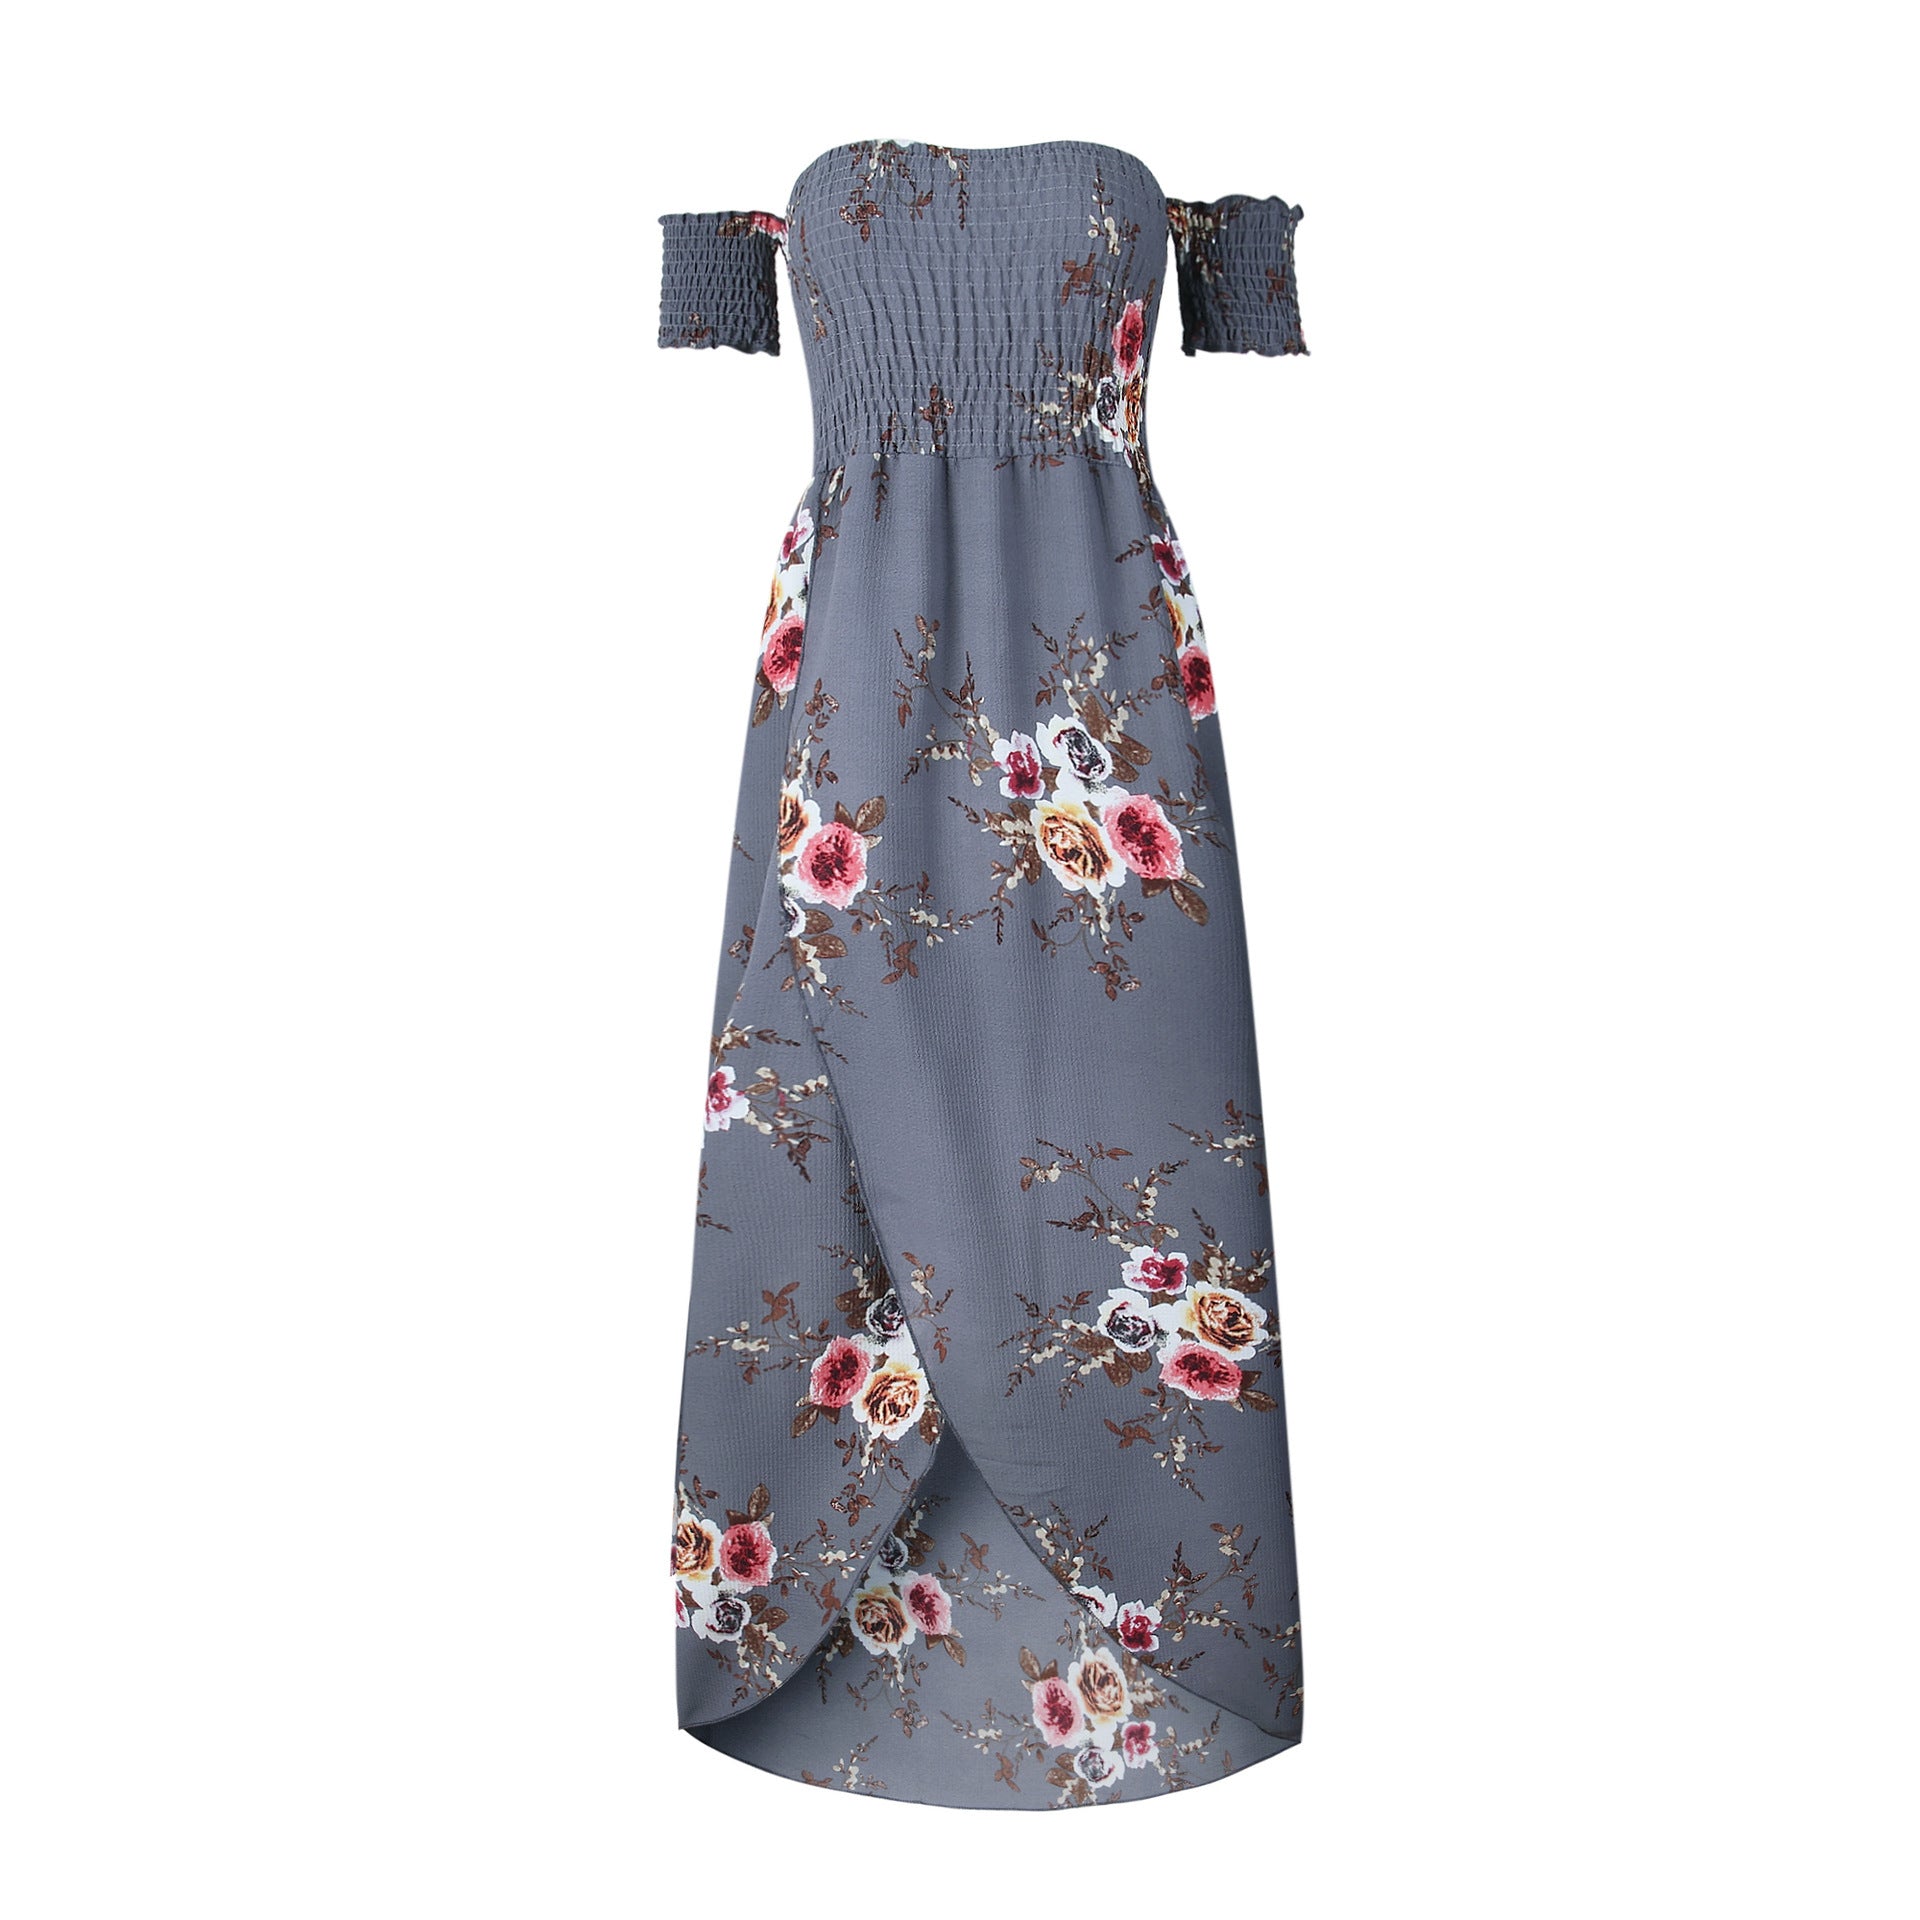 Women's Casual Sundress Boho Beach Slit Long Maxi Floral Summer Beach Dress  Gift | eBay